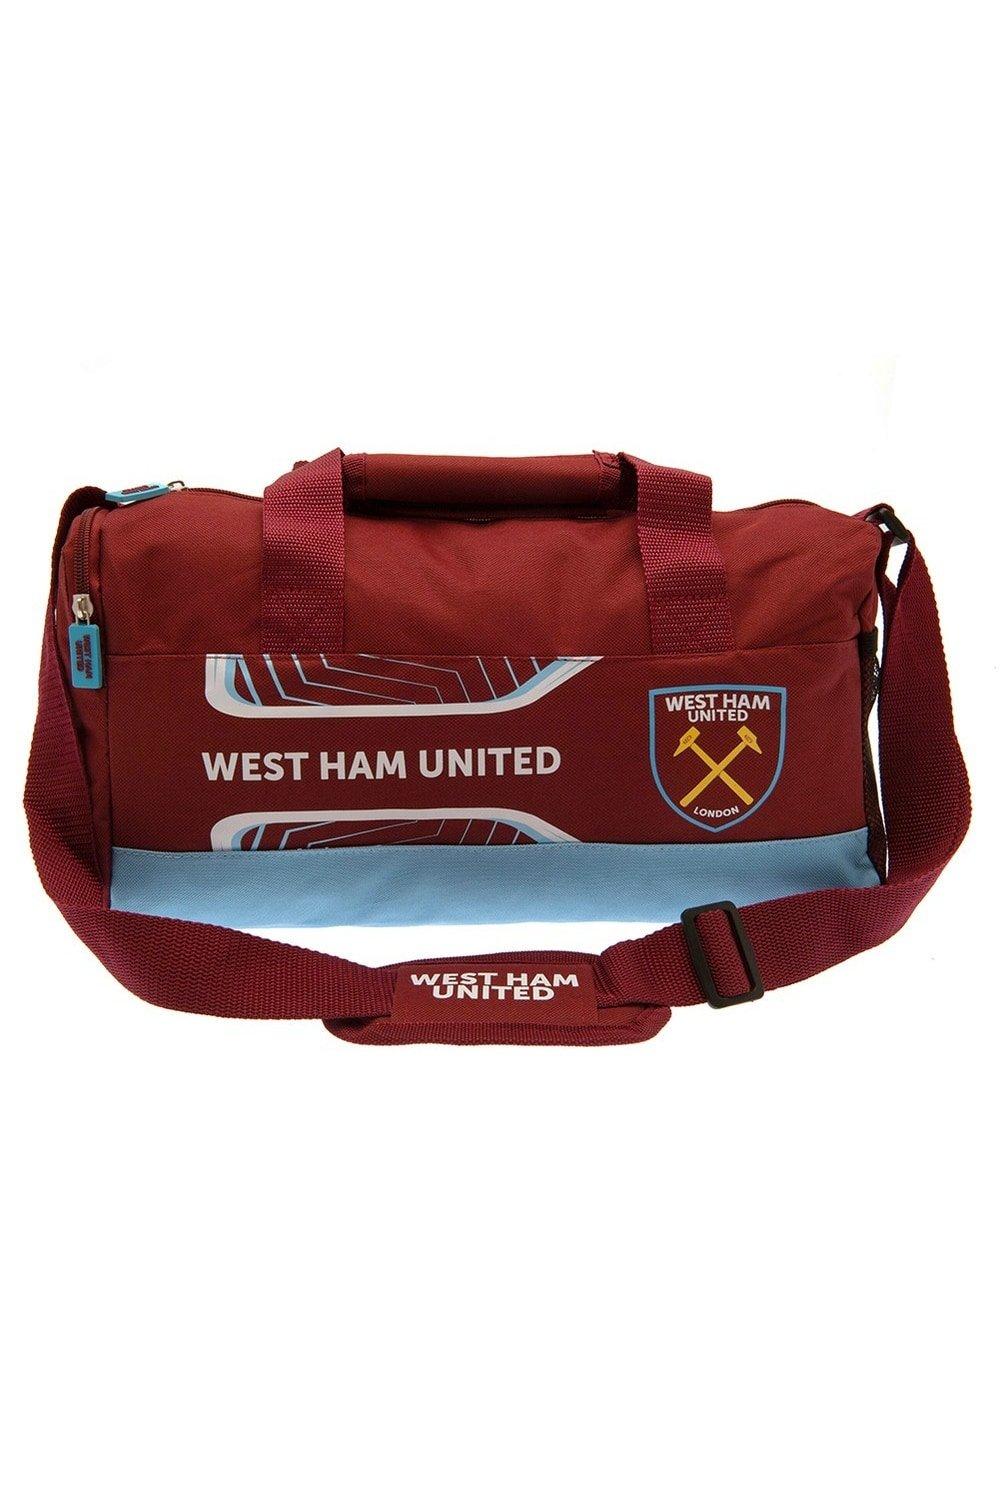 застежка молния для брюк и юбок длина 20см ширина 3 см Спортивная сумка Flash West Ham United FC, красный